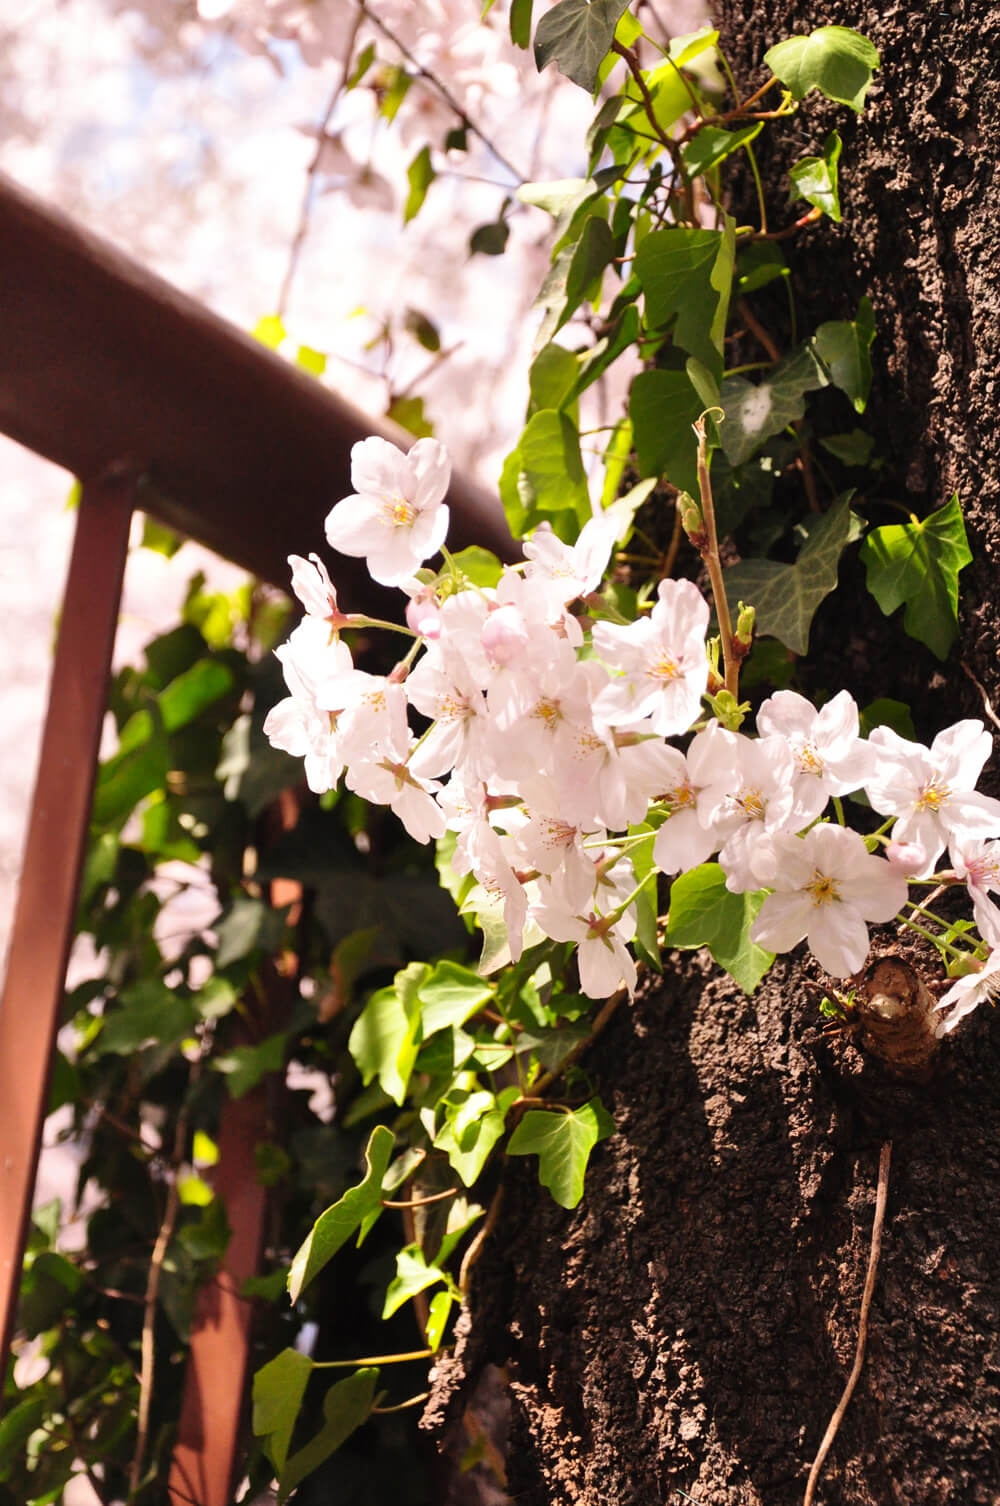 桜満開の「目黒川」